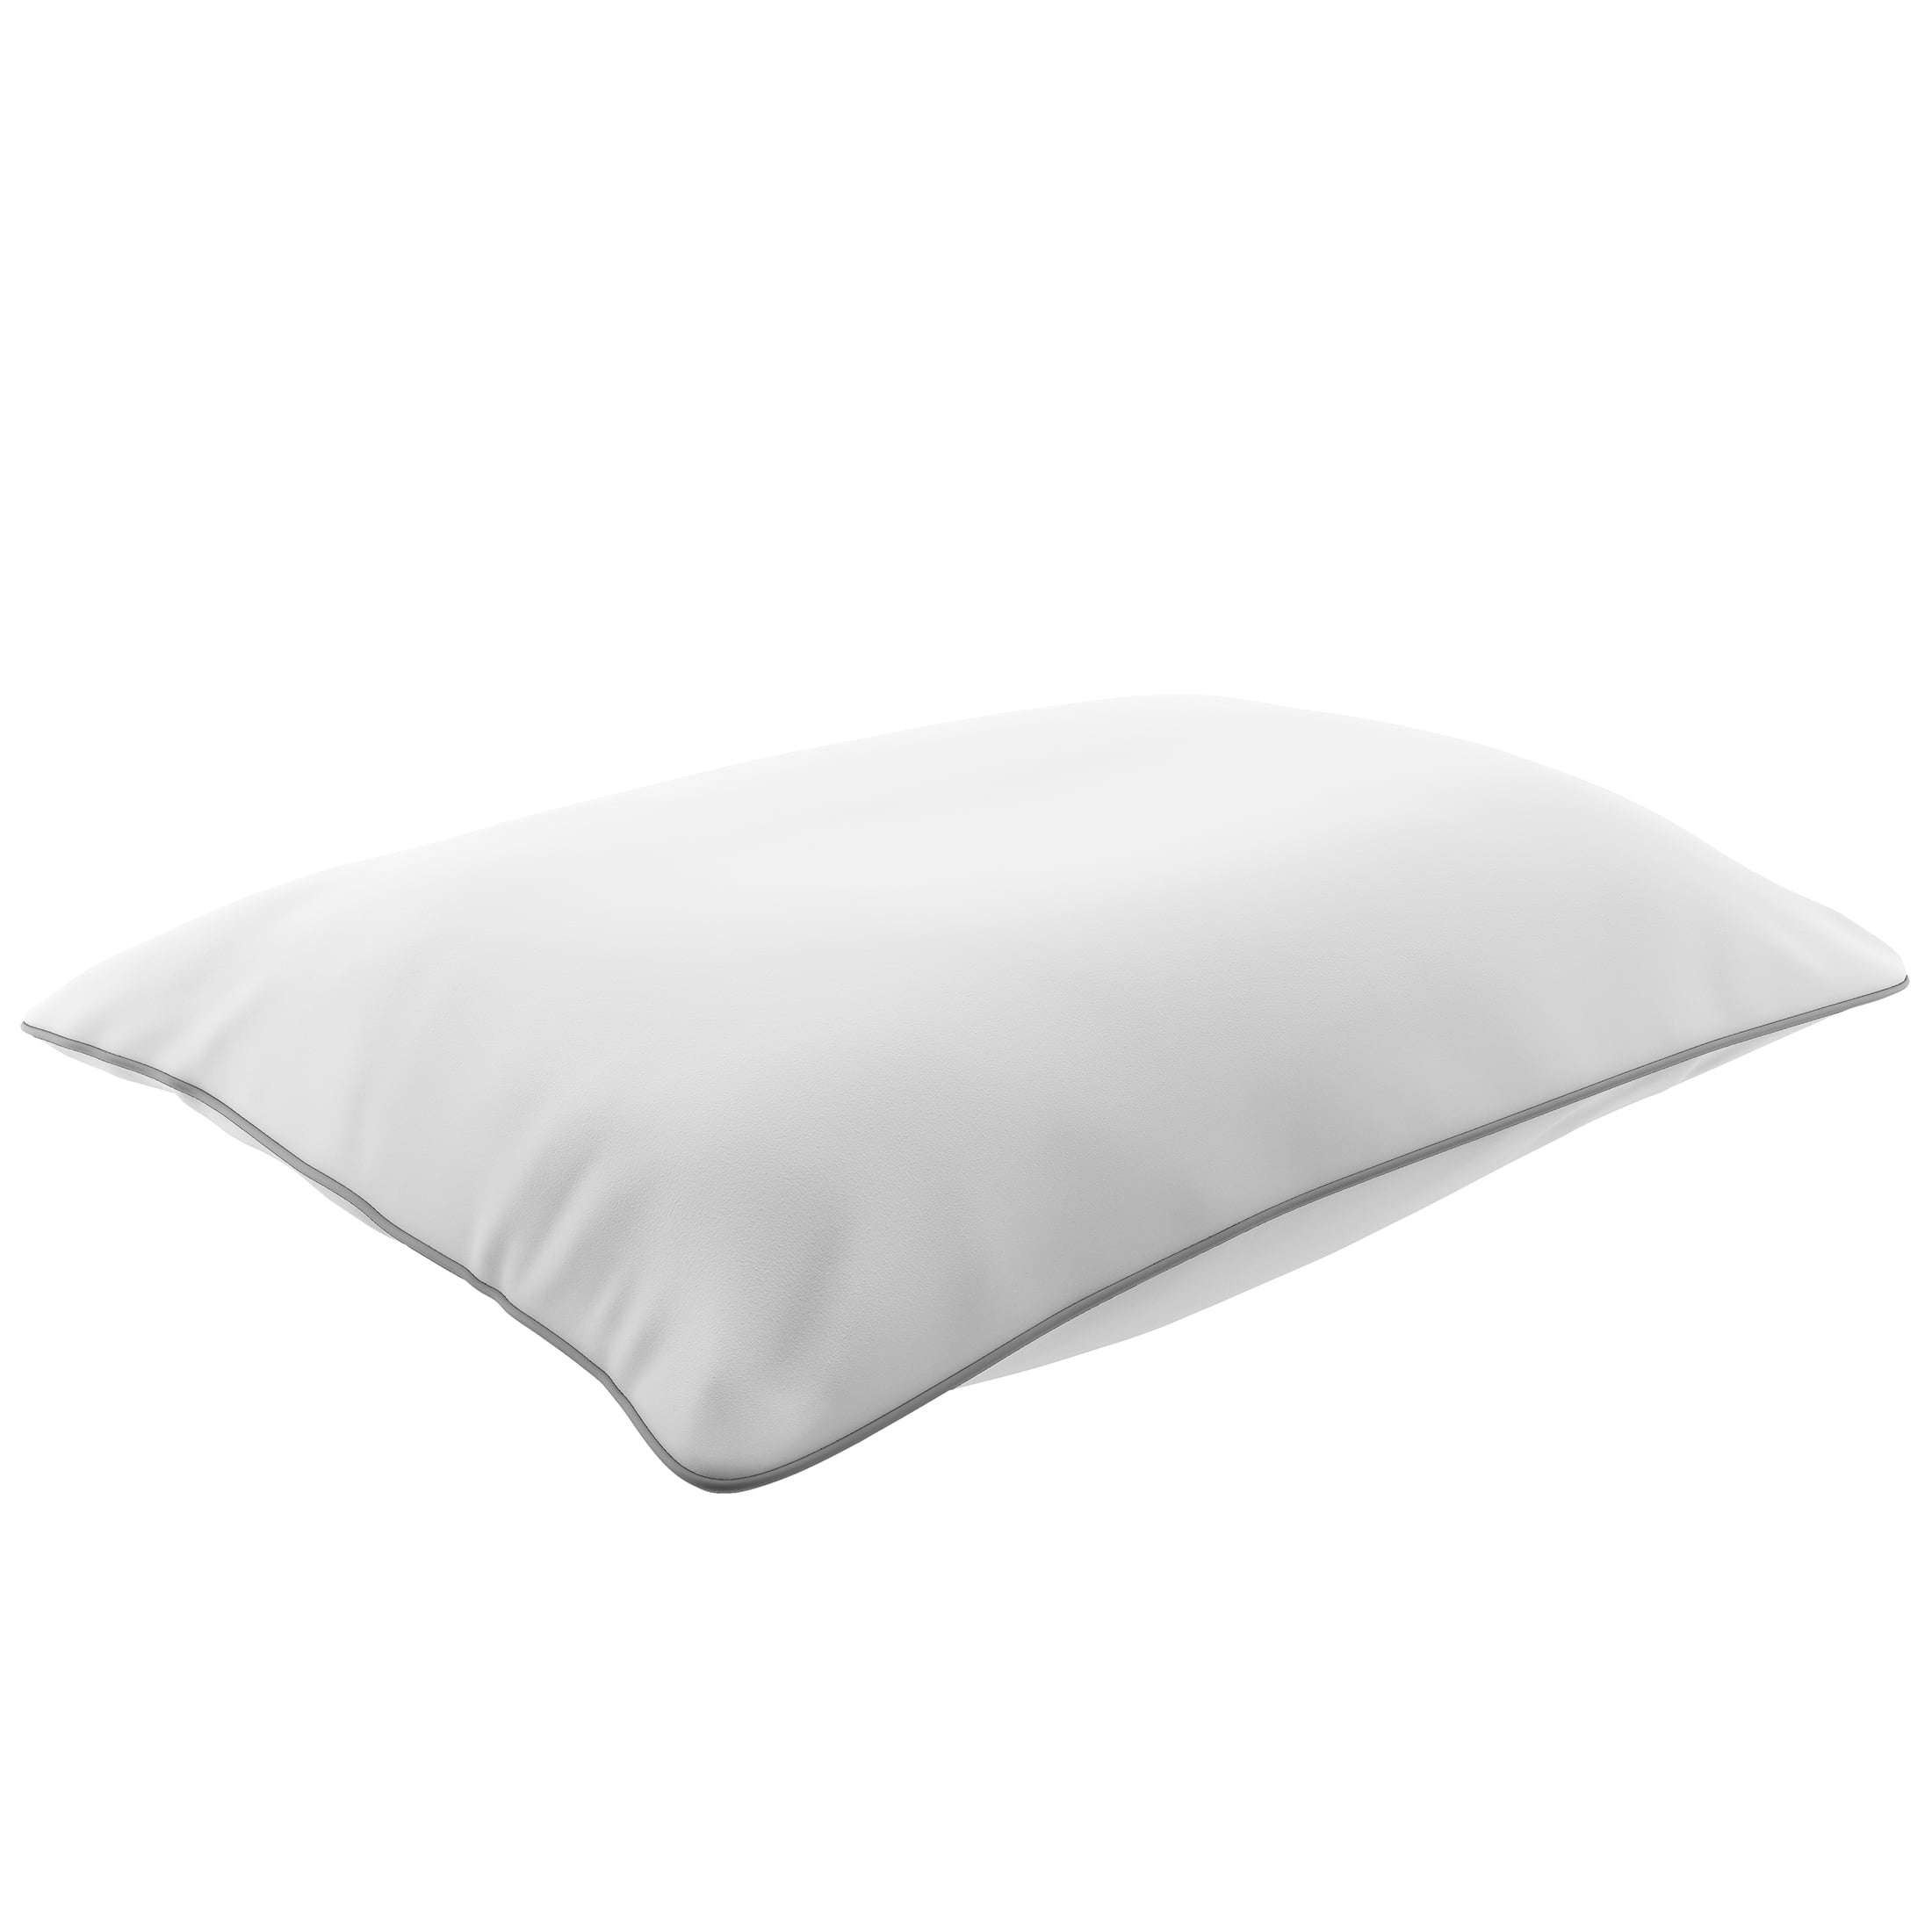 Serta Gel Memory Foam Cluster Pillows, Set Of 2